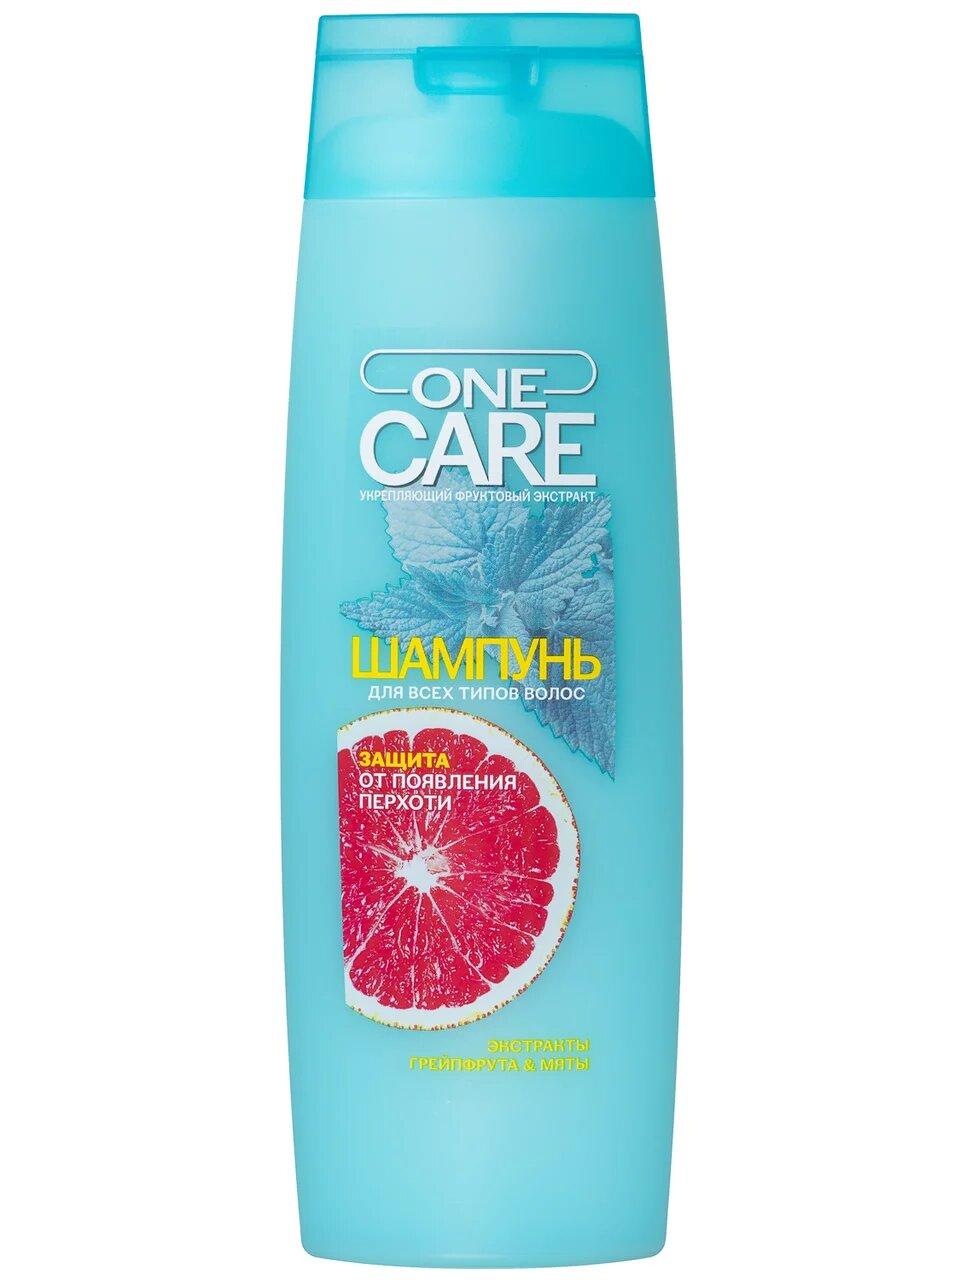 Шампунь для волос OneCare "Экстракт грейпфрута и мяты"